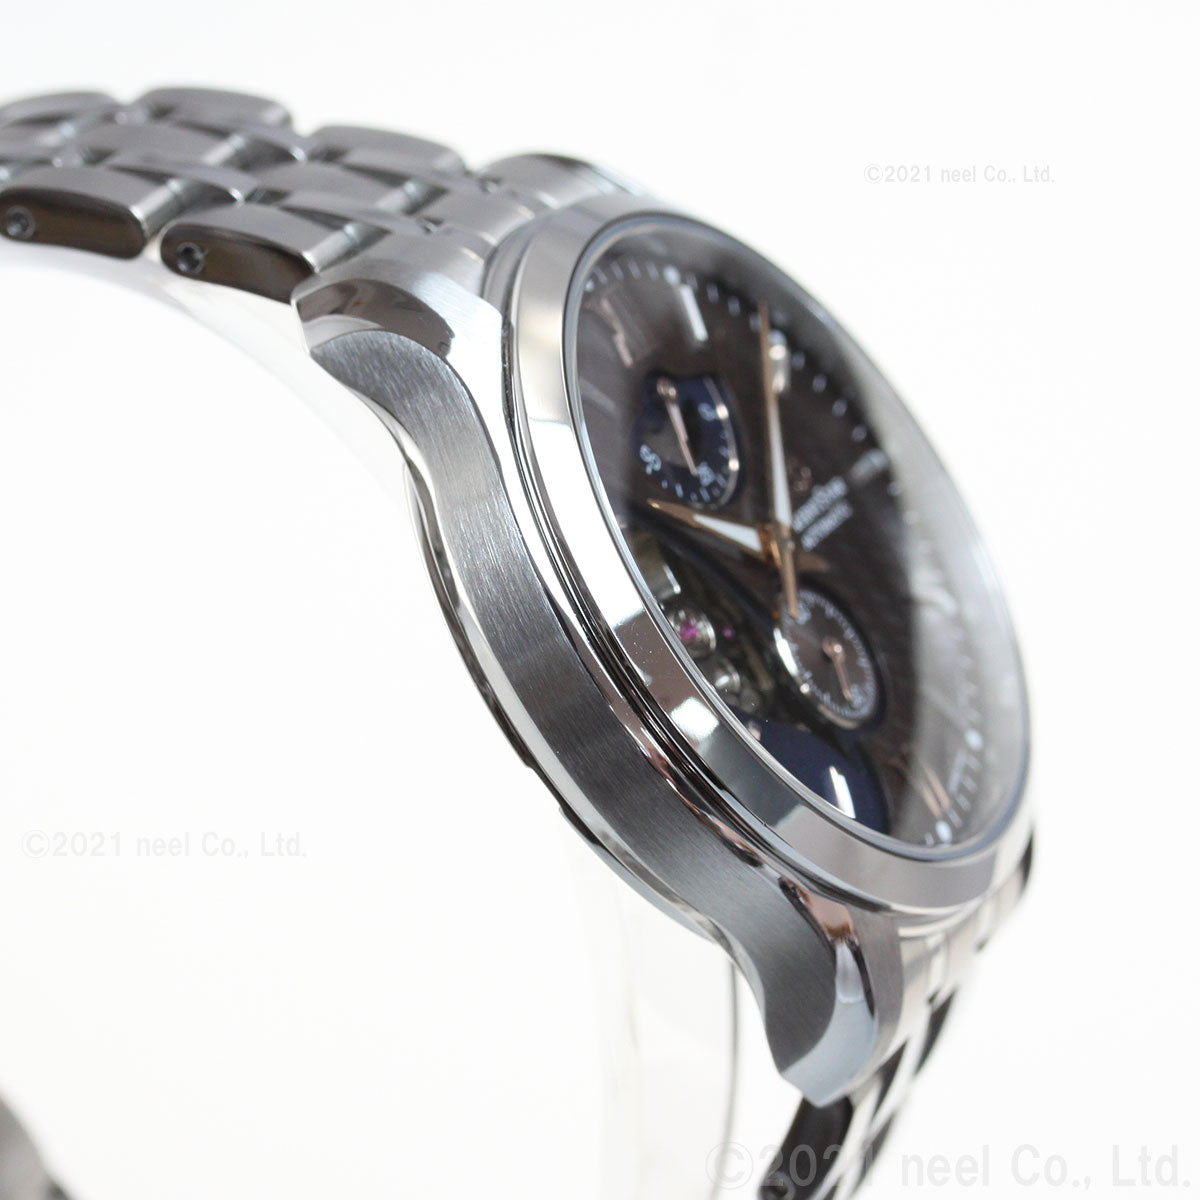 オリエントスター ORIENT STAR 腕時計 メンズ 自動巻き コンテンポラリー CONTEMPORALY レイヤードスケルトン RK-AV0B02Y